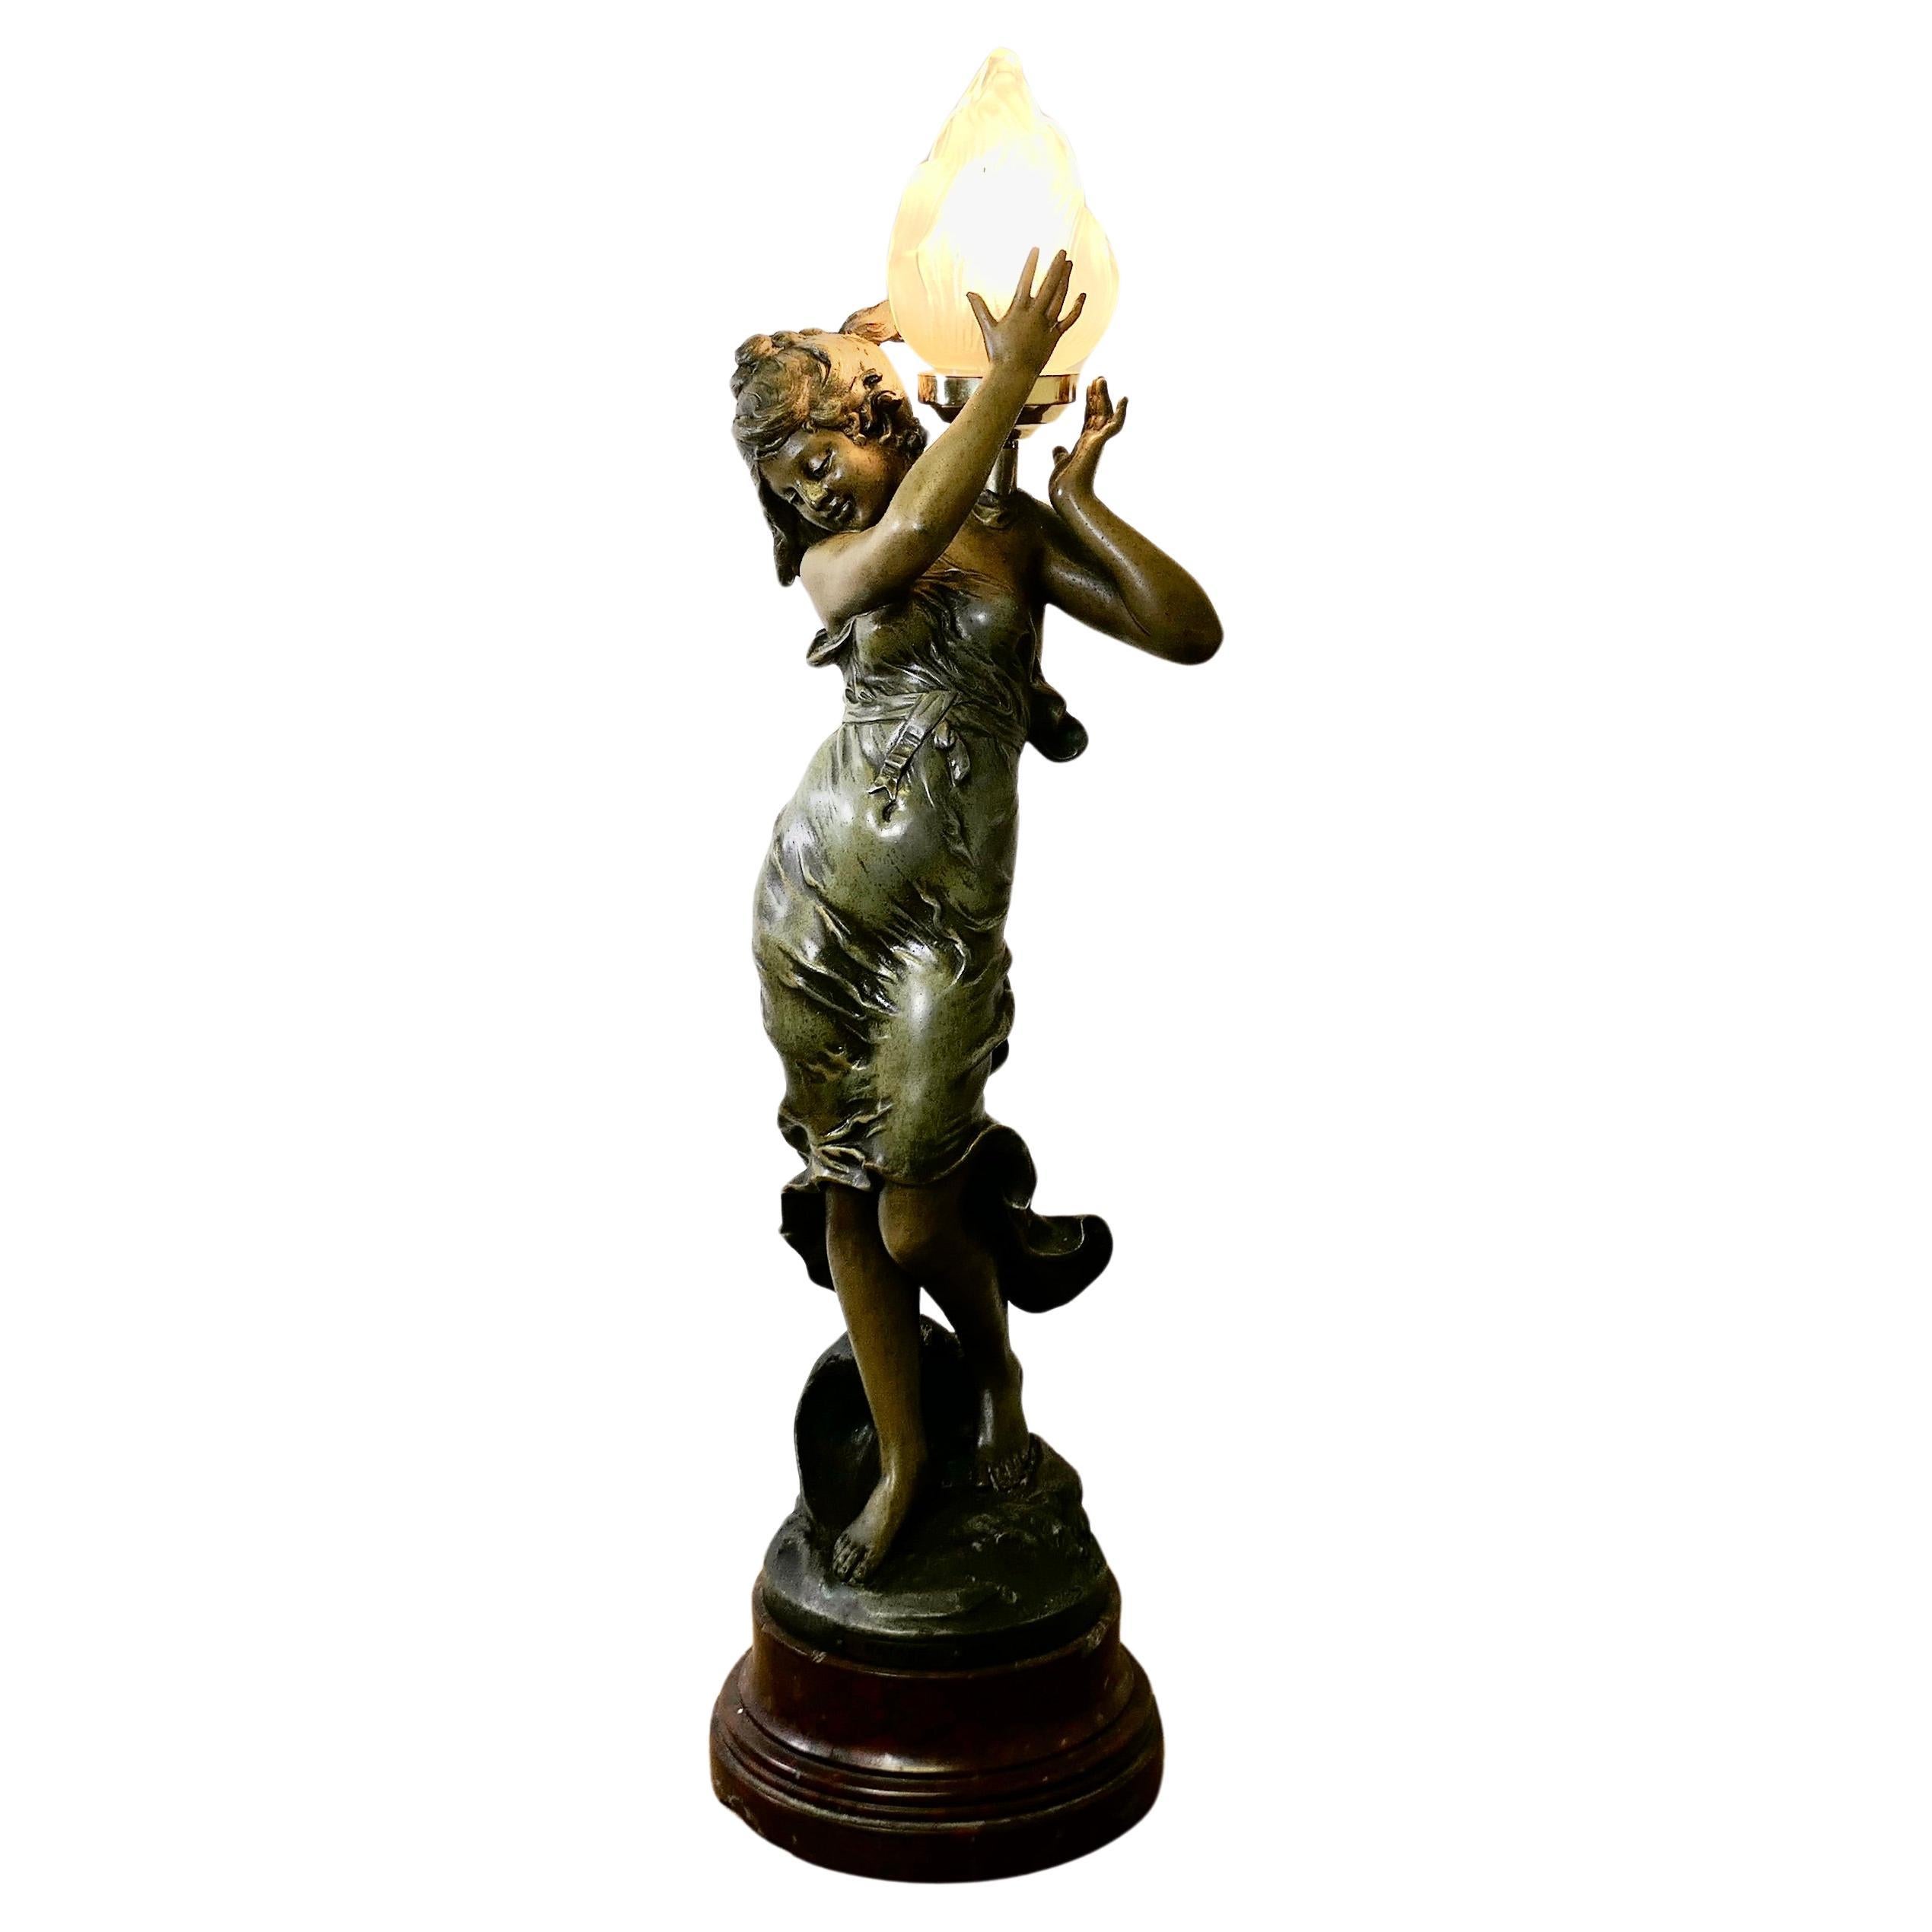 Lampe figurative Art Nouveau signée Auguste Moreau   Une lampe charmante  